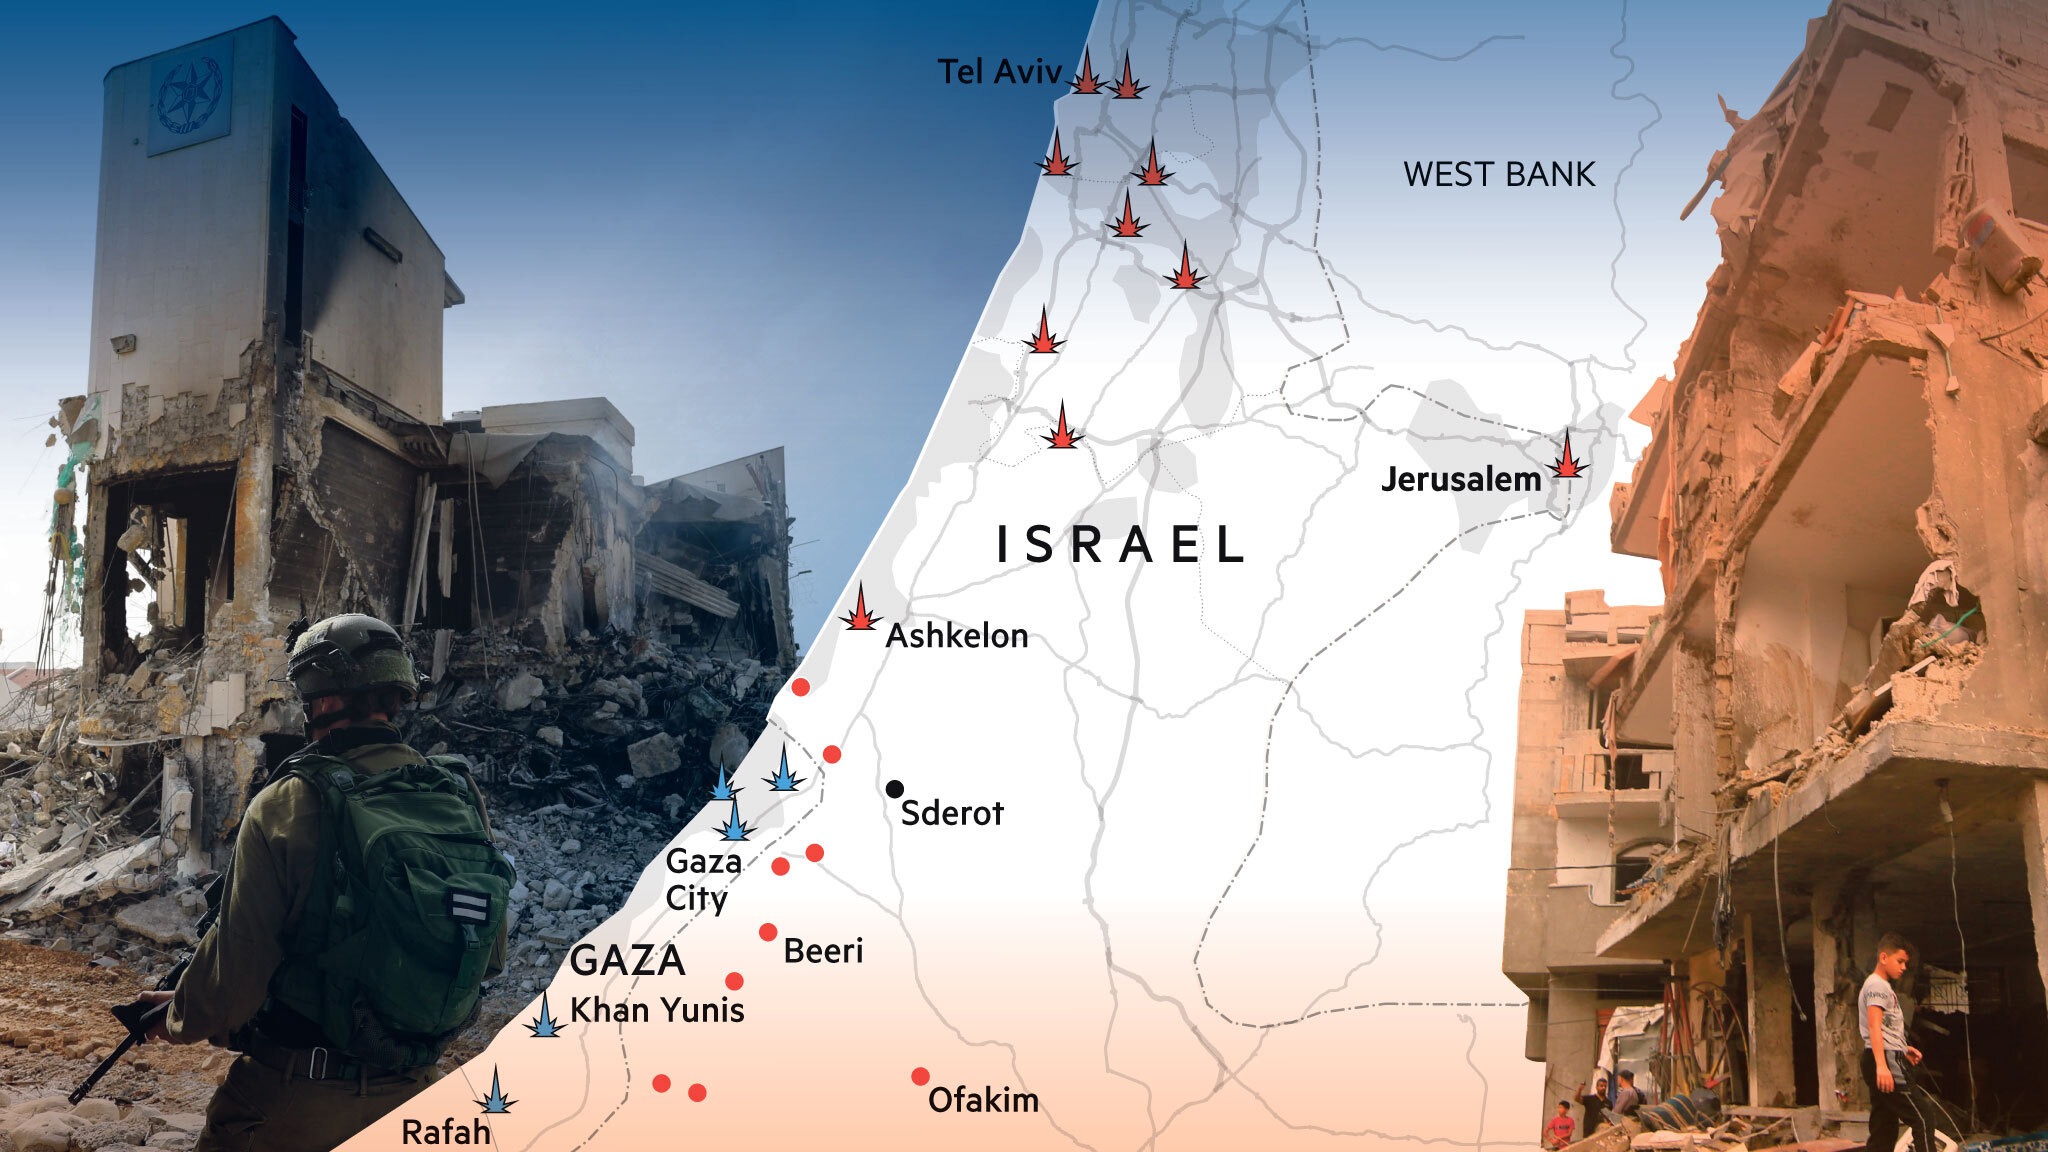 以色列军方称击落2枚发射自加沙地带的导弹 - 2017年12月29日, 俄罗斯卫星通讯社